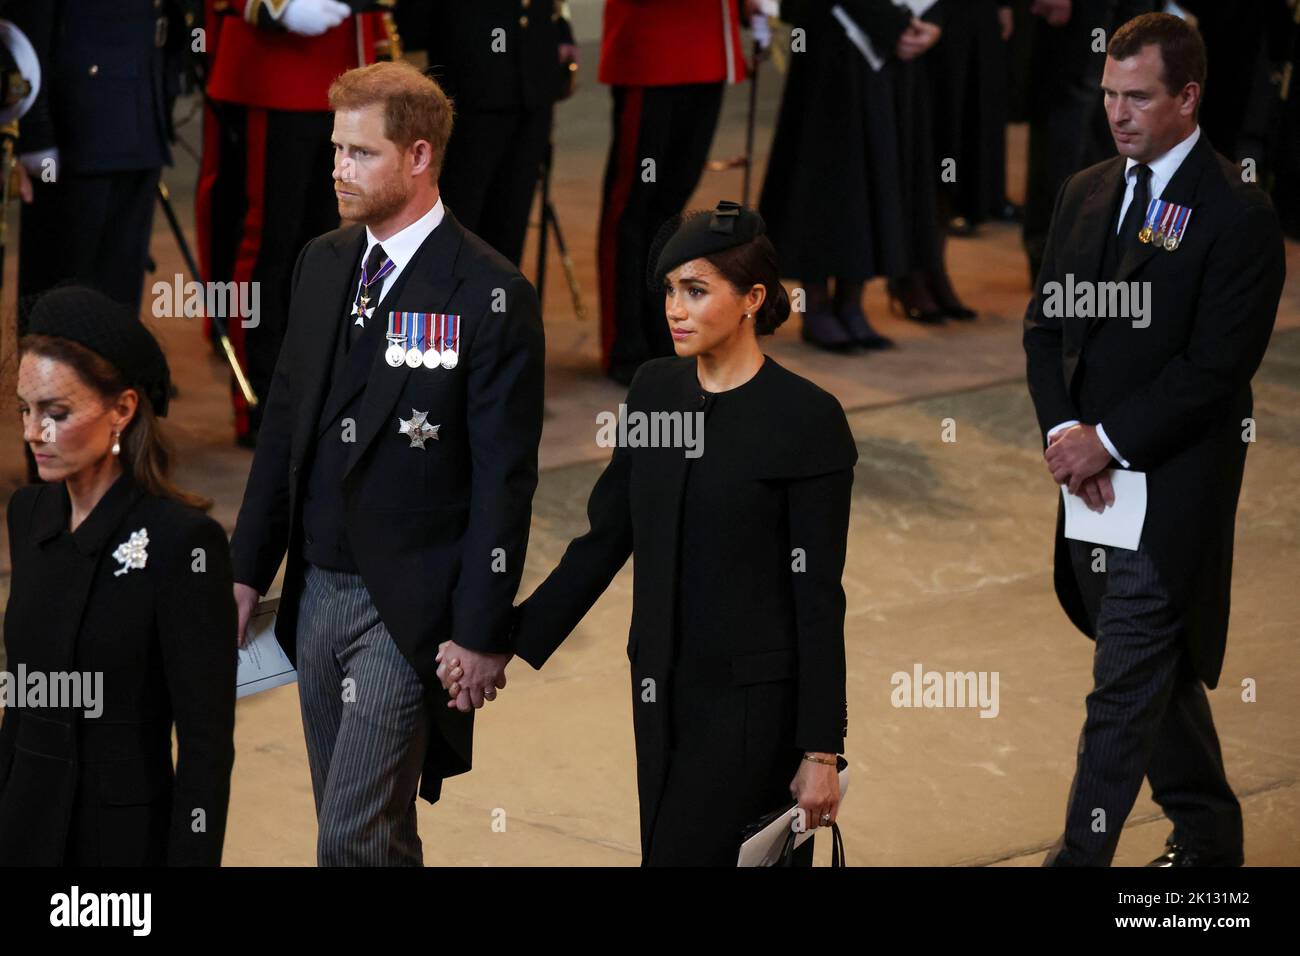 Der Herzog und die Herzogin von Sussex am Sarg von Königin Elizabeth II. In der Westminster Hall, London, wo er vor ihrer Beerdigung am Montag in einem Zustand liegen wird. Bilddatum: Mittwoch, 14. September 2022. Stockfoto